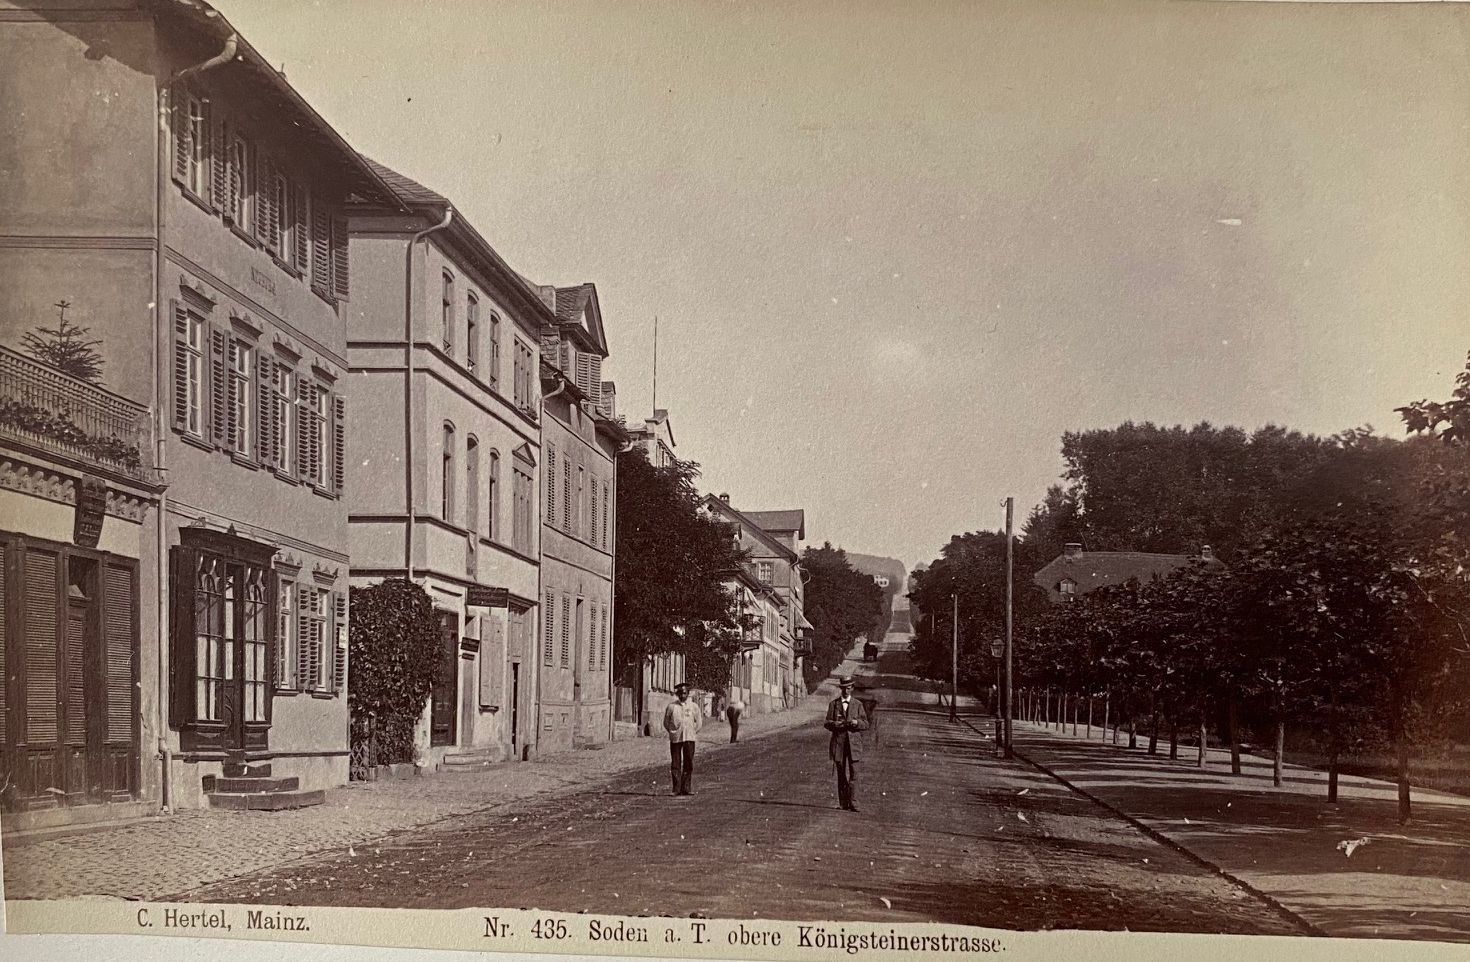 Fotografie, Carl Hertel No. 435, Soden a. T. obere Königsteinerstrasse, ca. 1885 (Taunus-Rhein-Main - Regionalgeschichtliche Sammlung Dr. Stefan Naas CC BY-NC-SA)